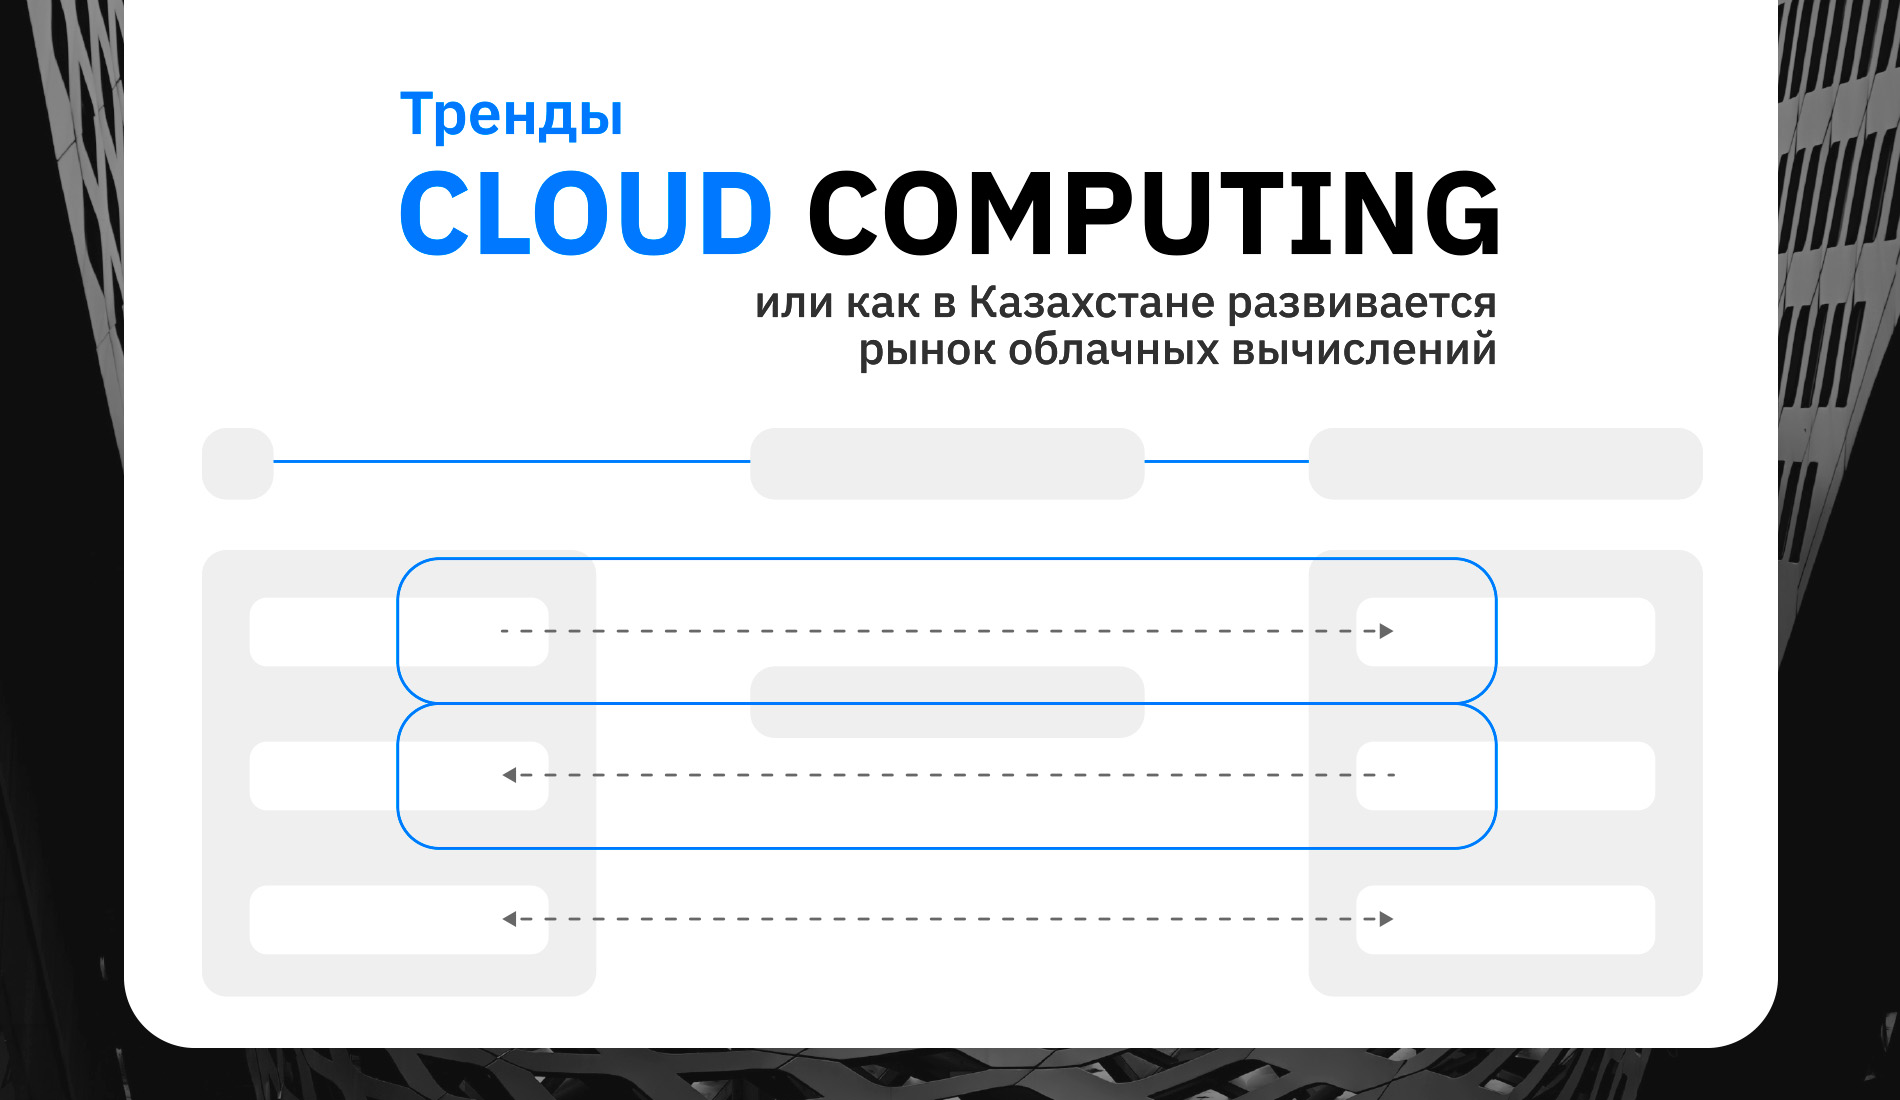 Тренды cloud computing или как в Казахстане развивается рынок облачных вычислений